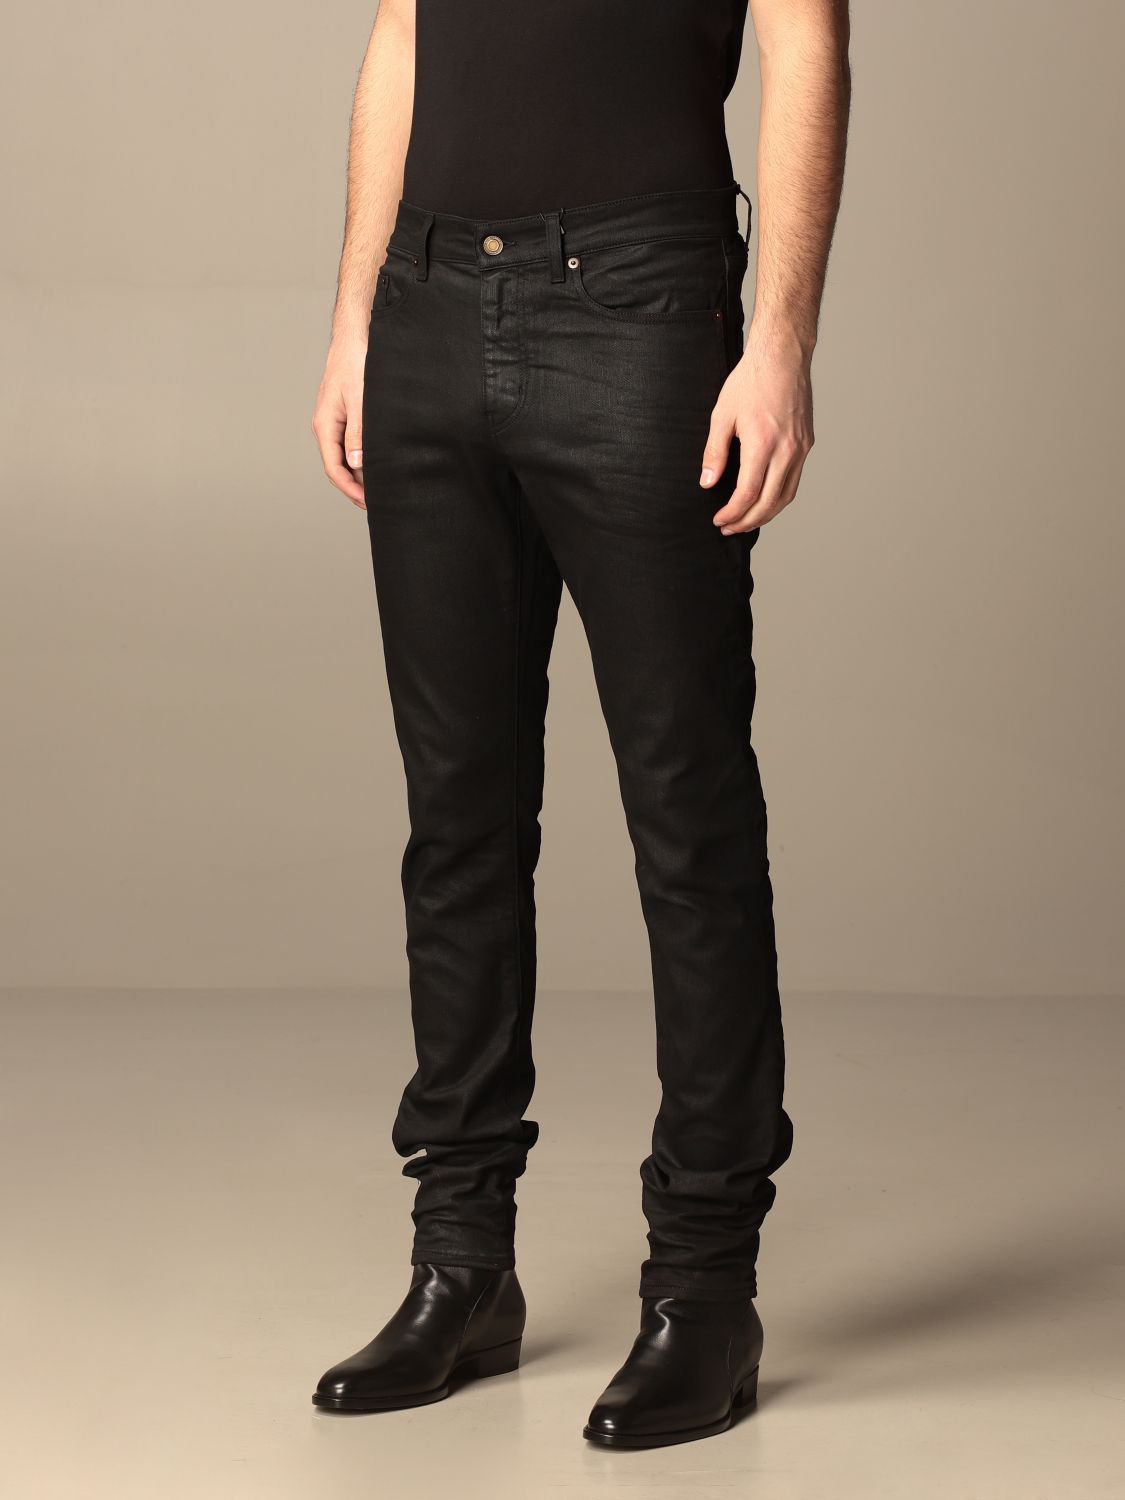 Saint Laurent 5-pocket jeans